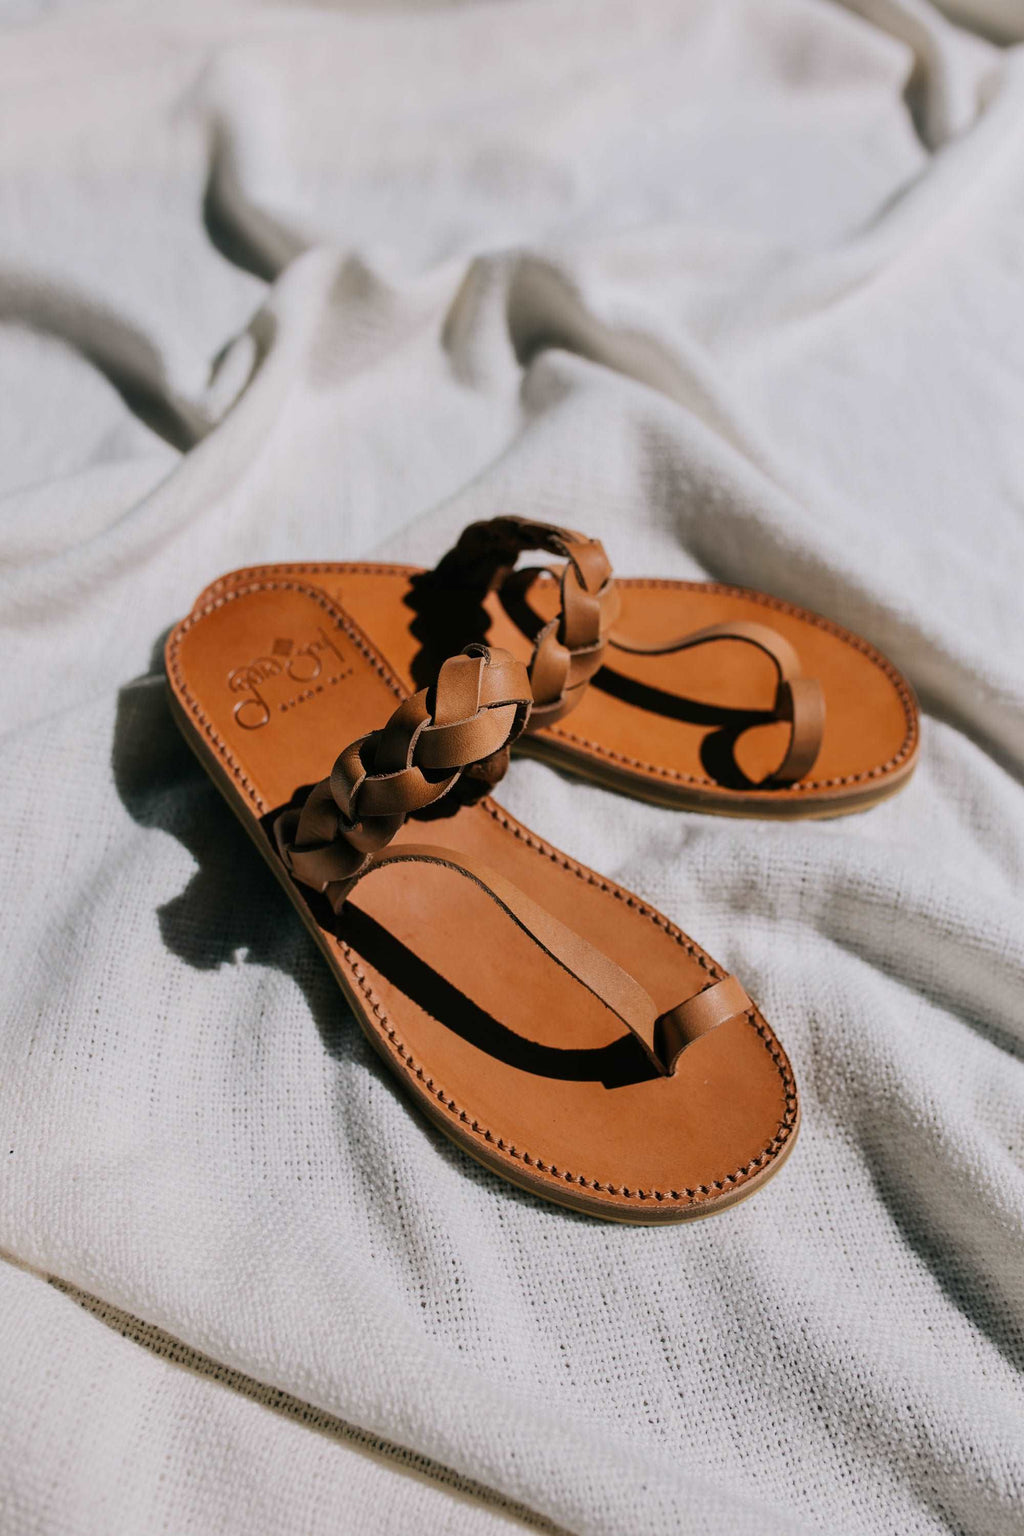 Griegas Sandals - Tan Leather Gaia Soul Designs